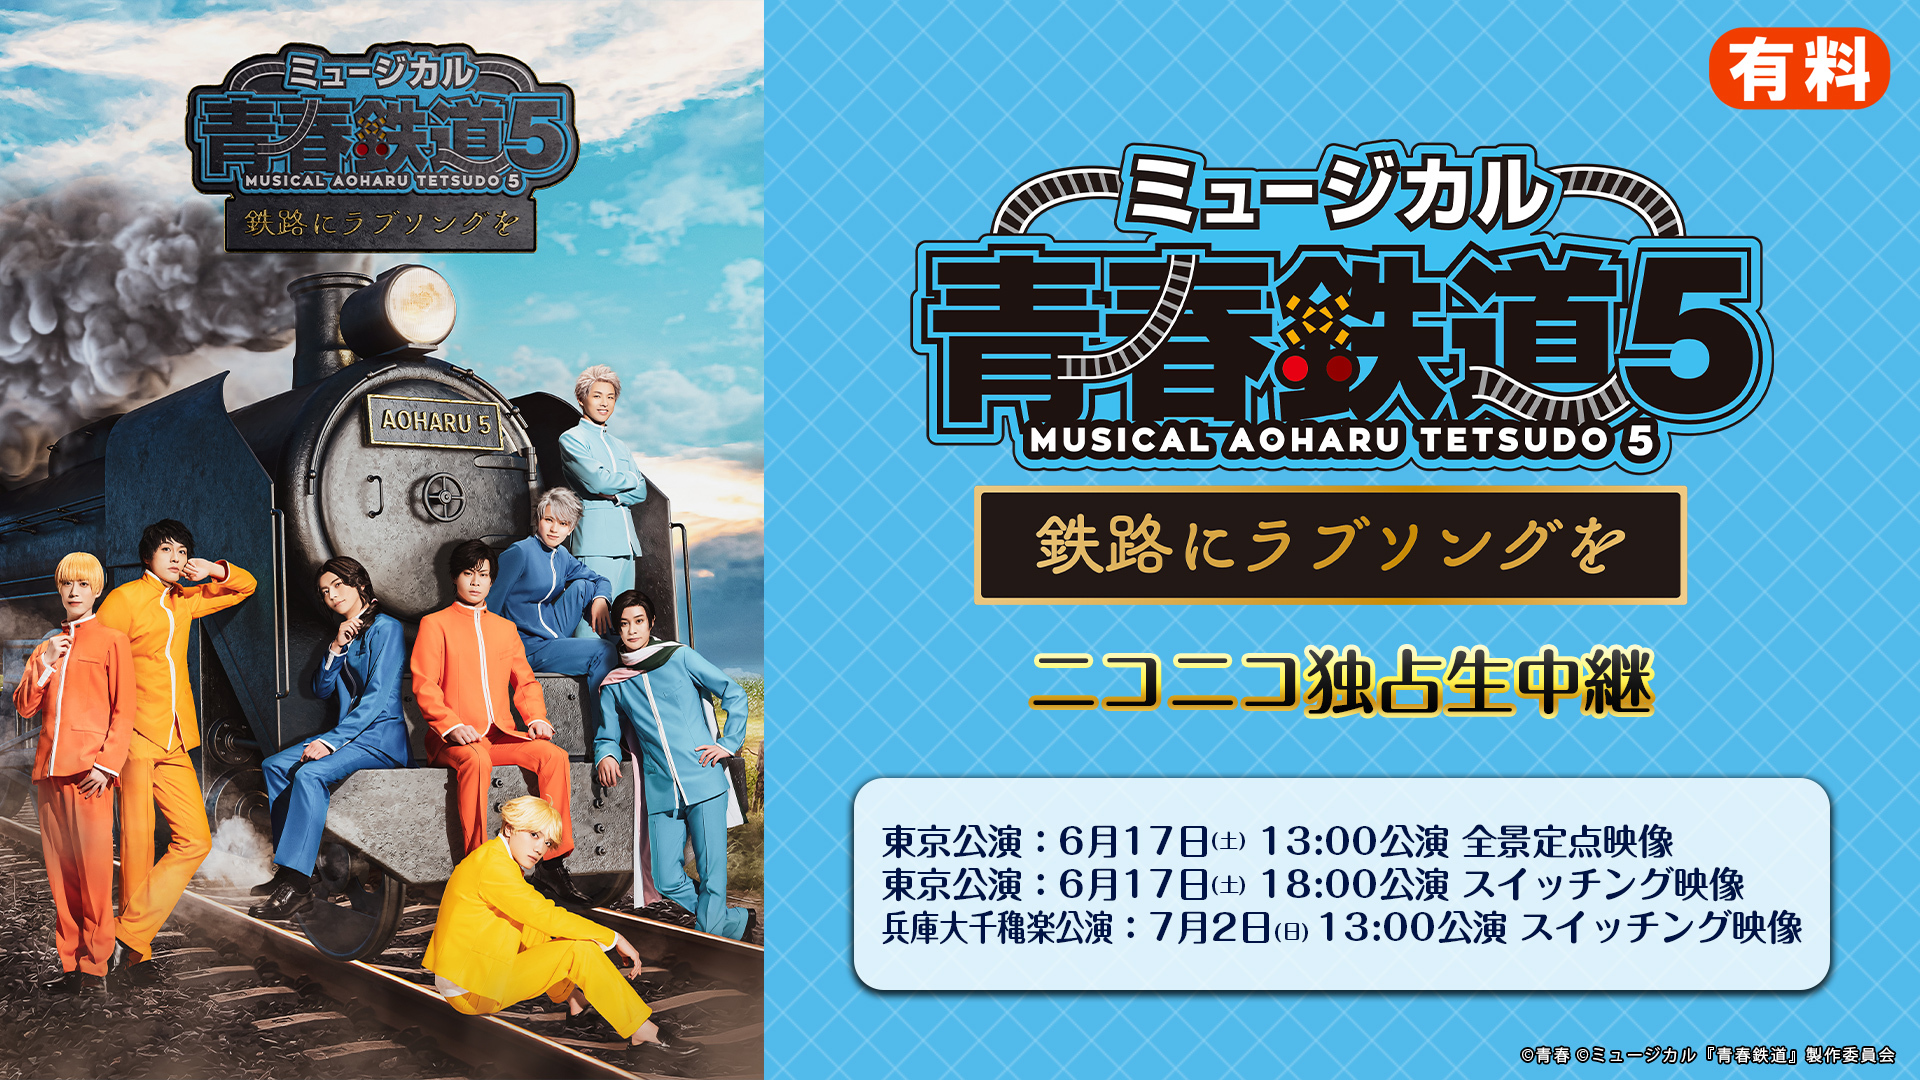 ミュージカル『青春-AOHARU-鉄道』5 〜鉄路にラブソングを〜 ニコニコ 